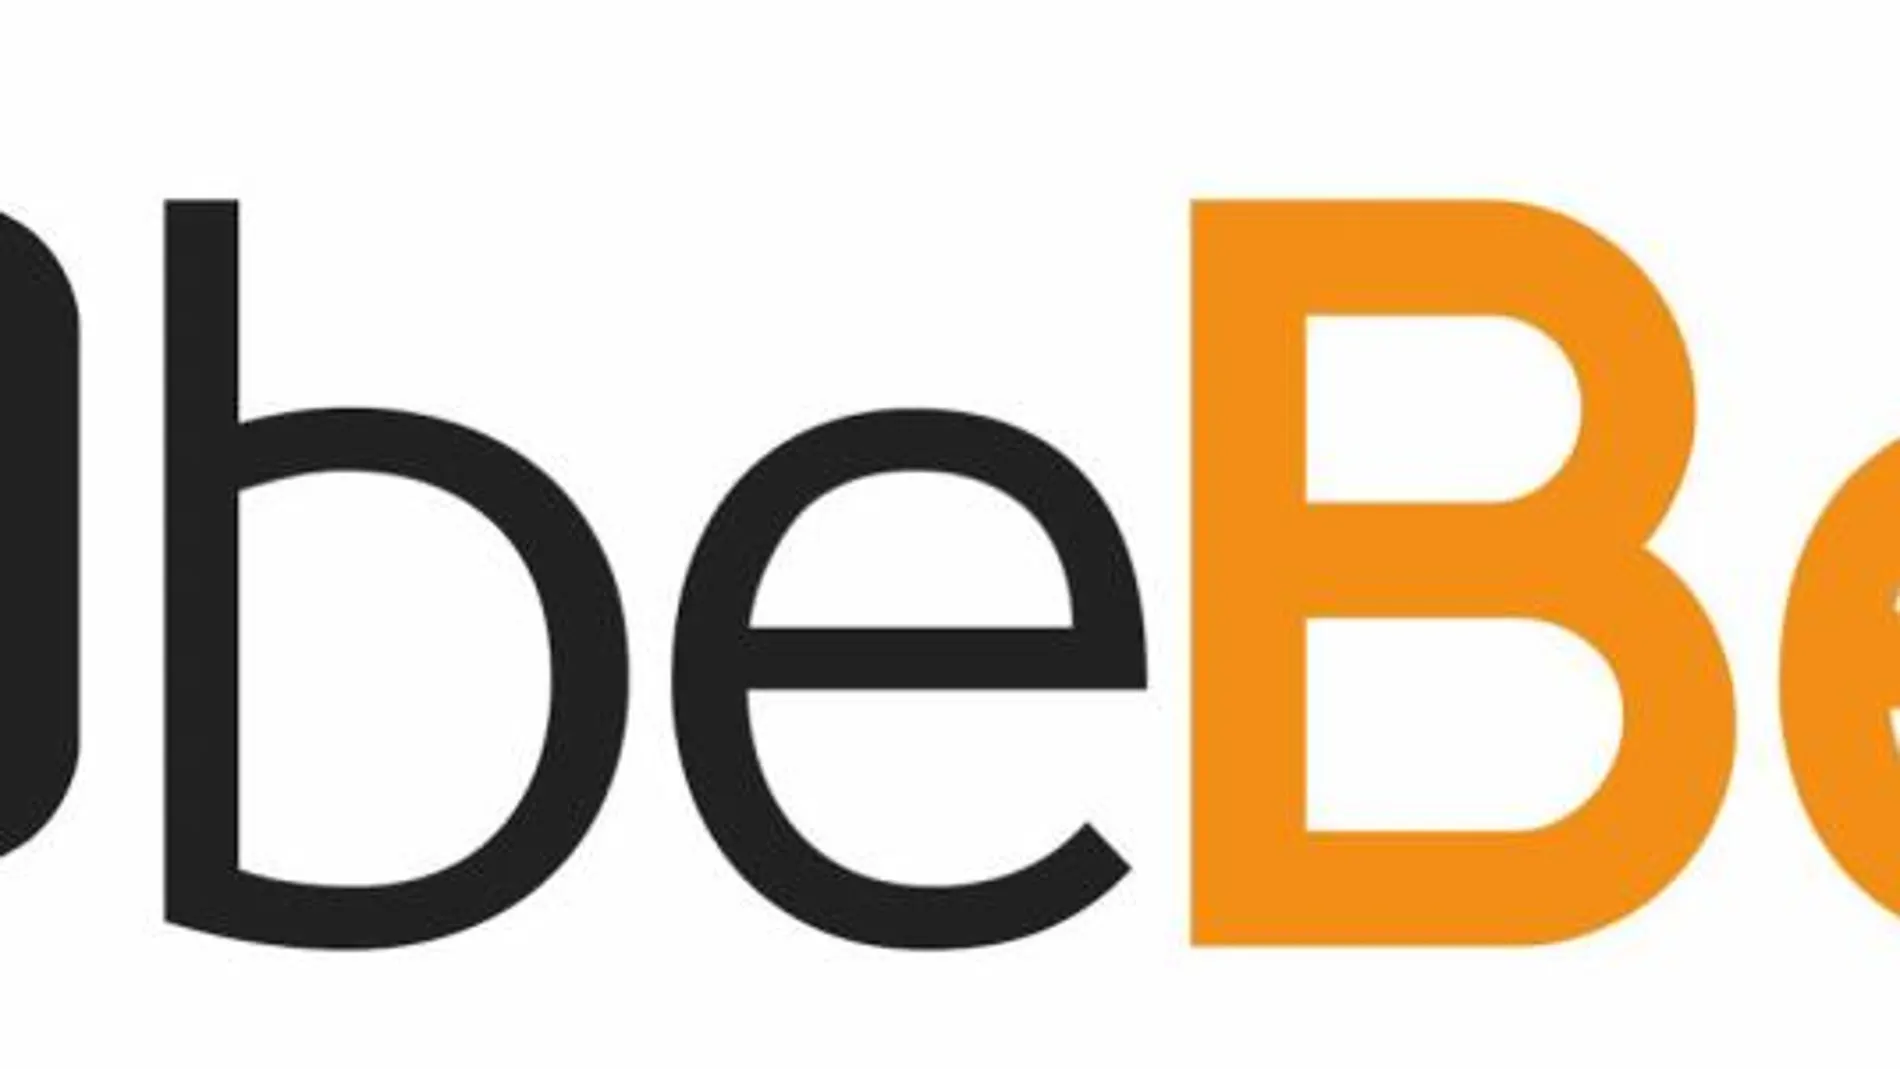 La plataforma tecnológica beBee, líder en las redes sociales para encontrar empleo